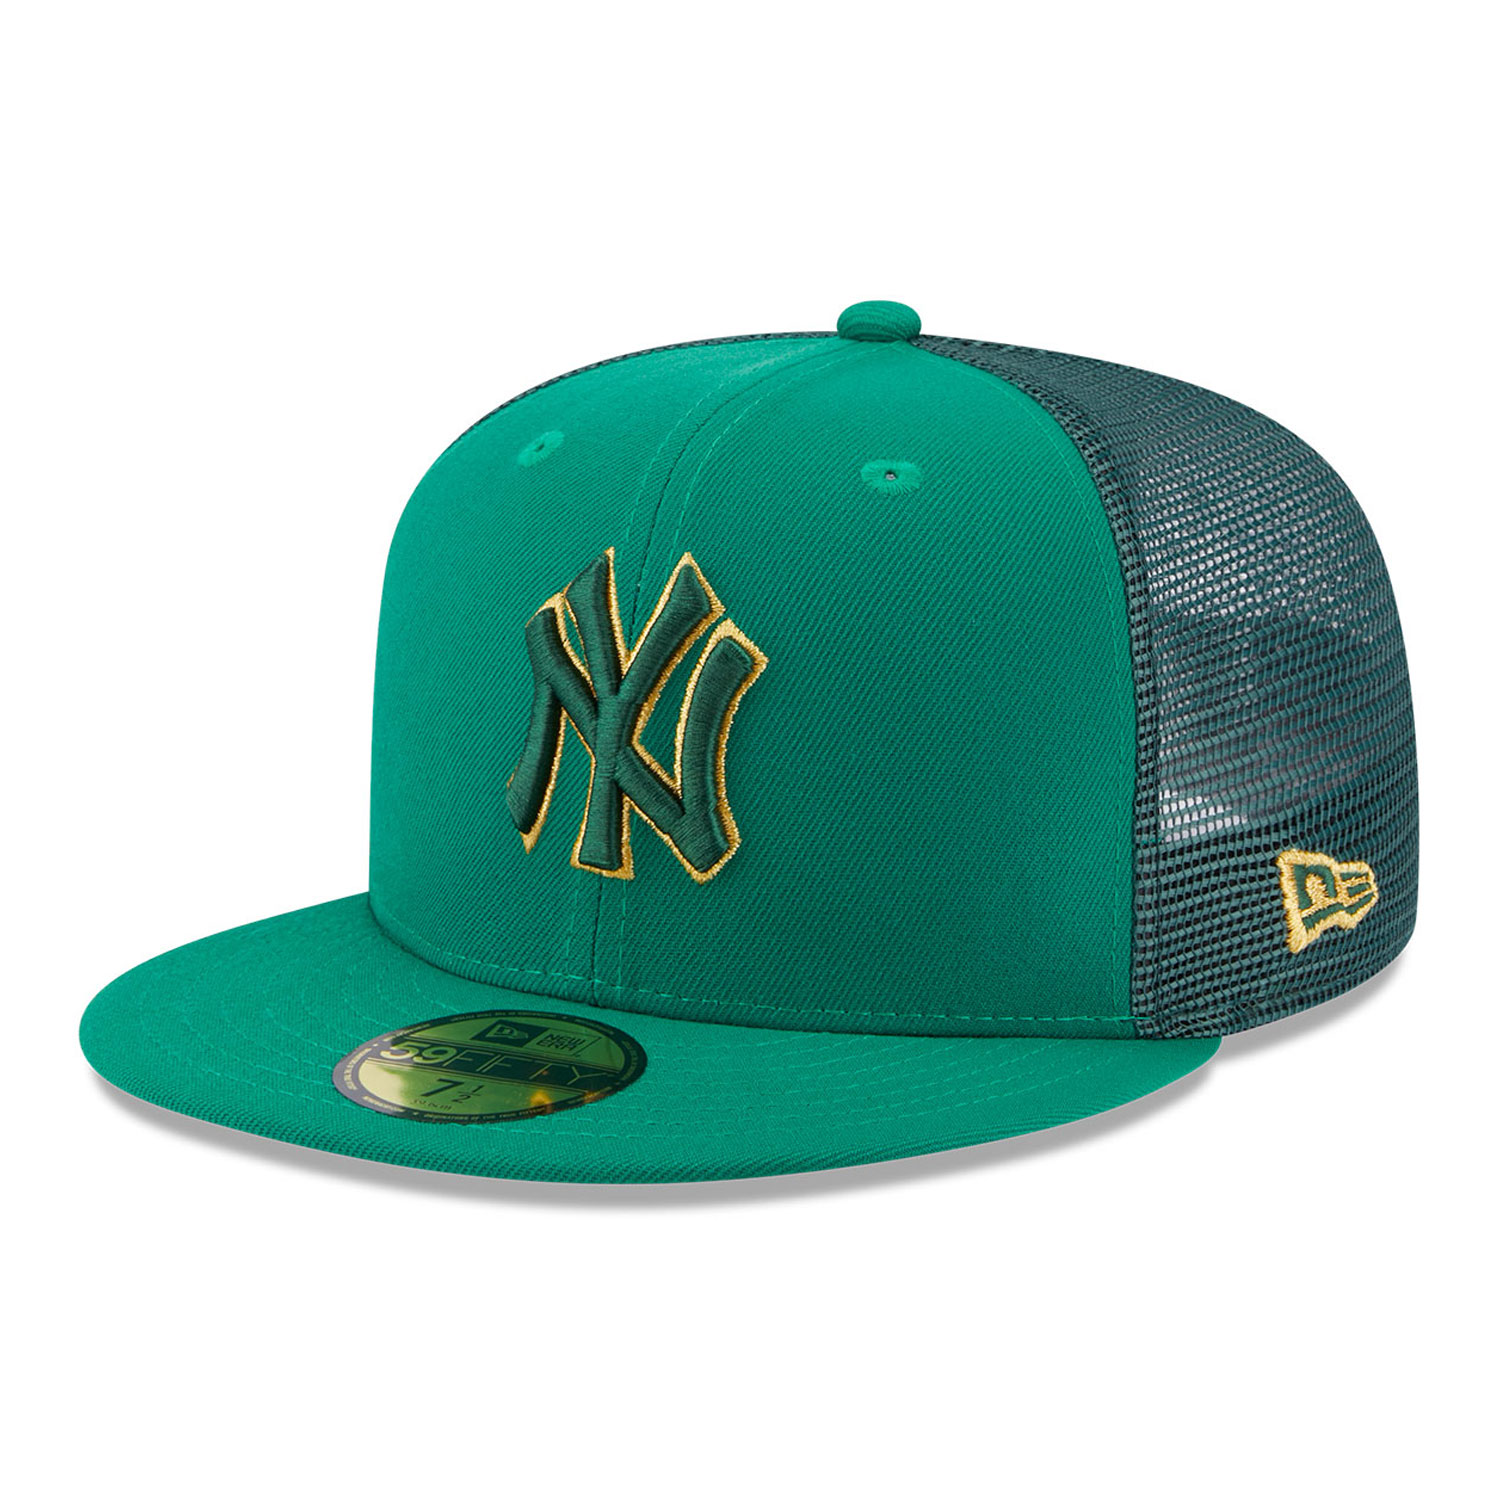 Gorras, sombreros y ropa de los Yankees de York | New Era Cap España